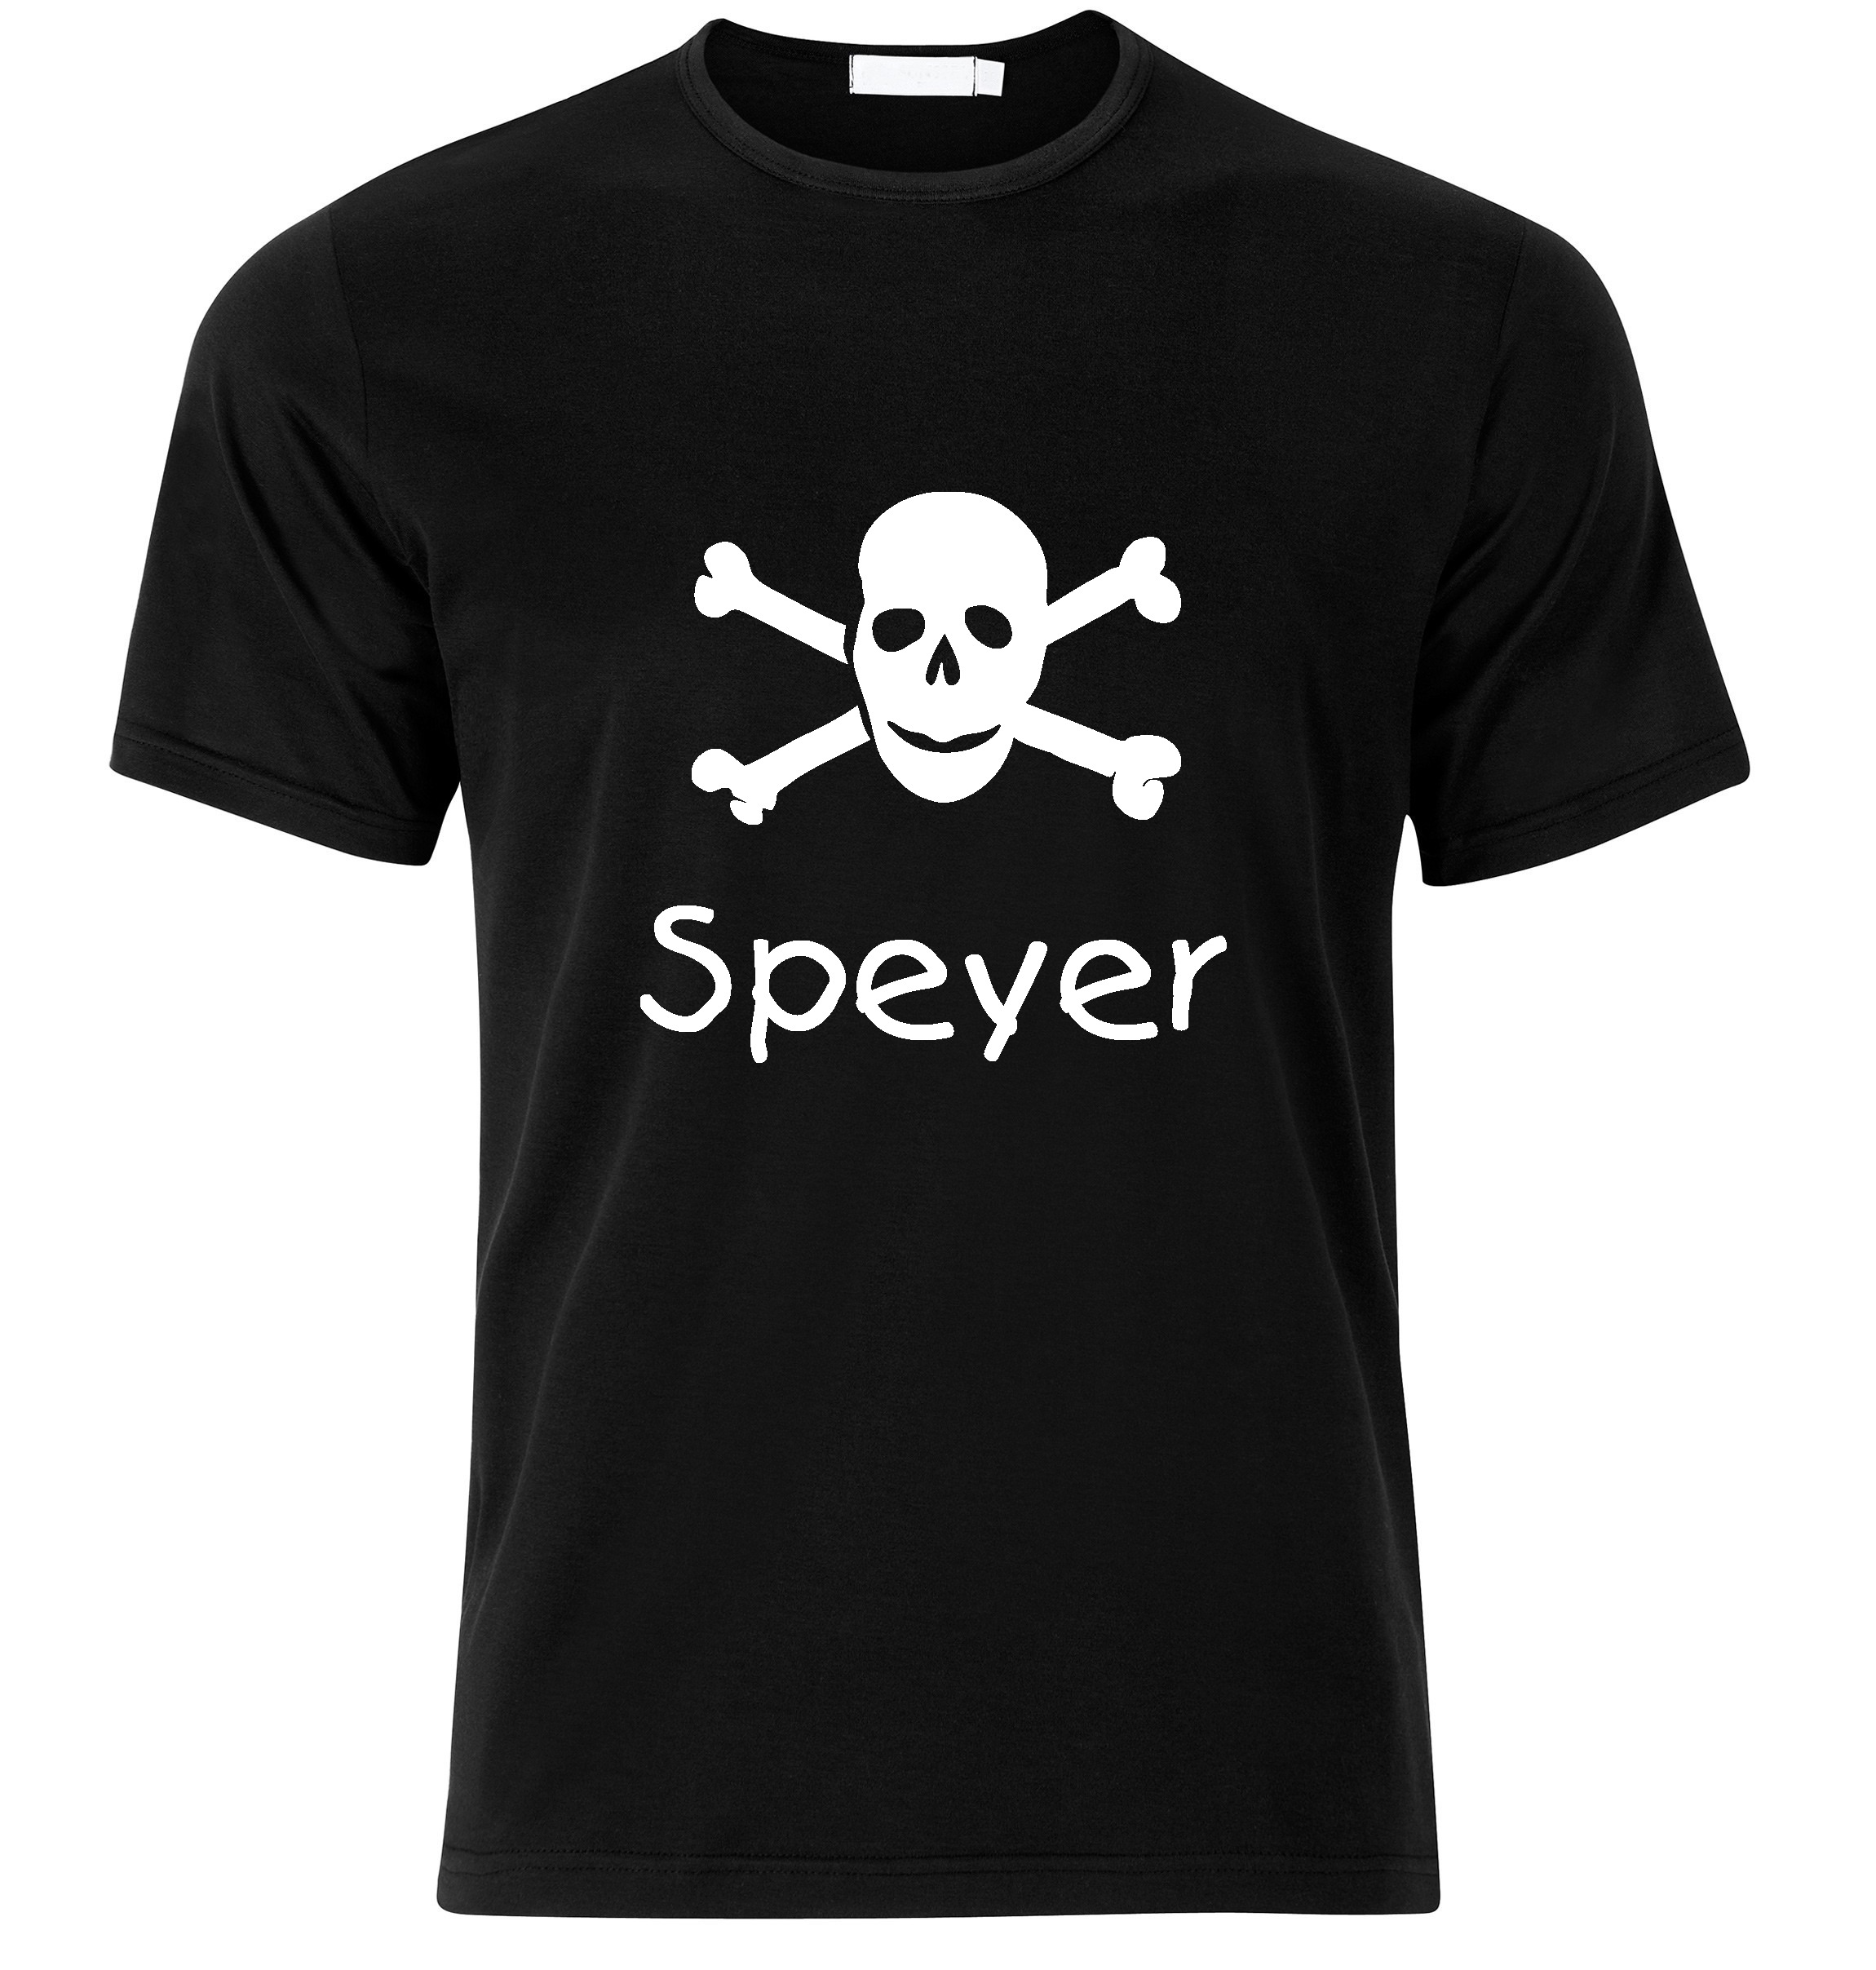 T-Shirt Speyer Jolly Roger, Totenkopf